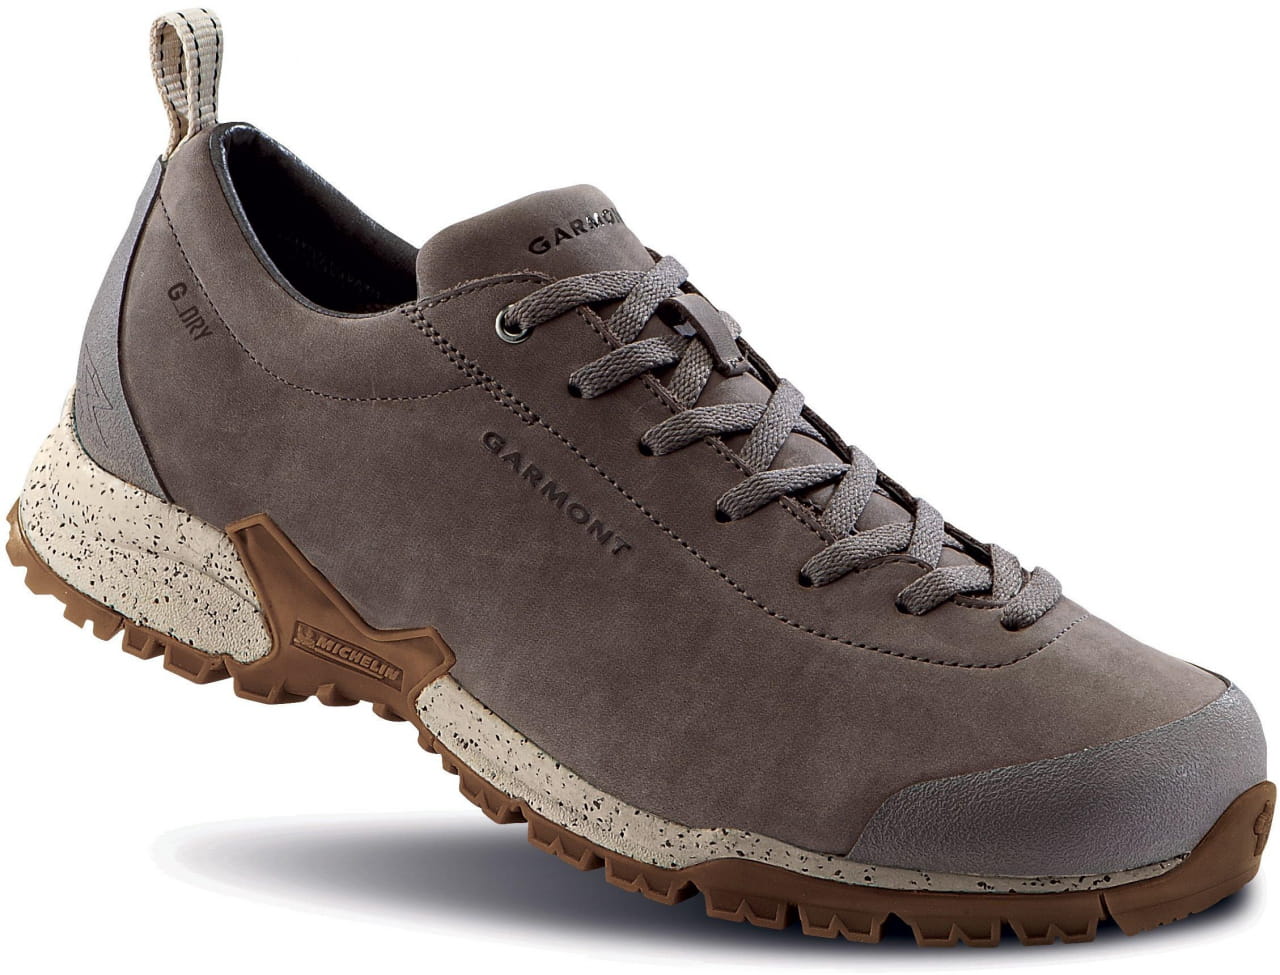 Outdoor-Schuhe für Frauen Garmont Tikal 4S G-Dry WMS